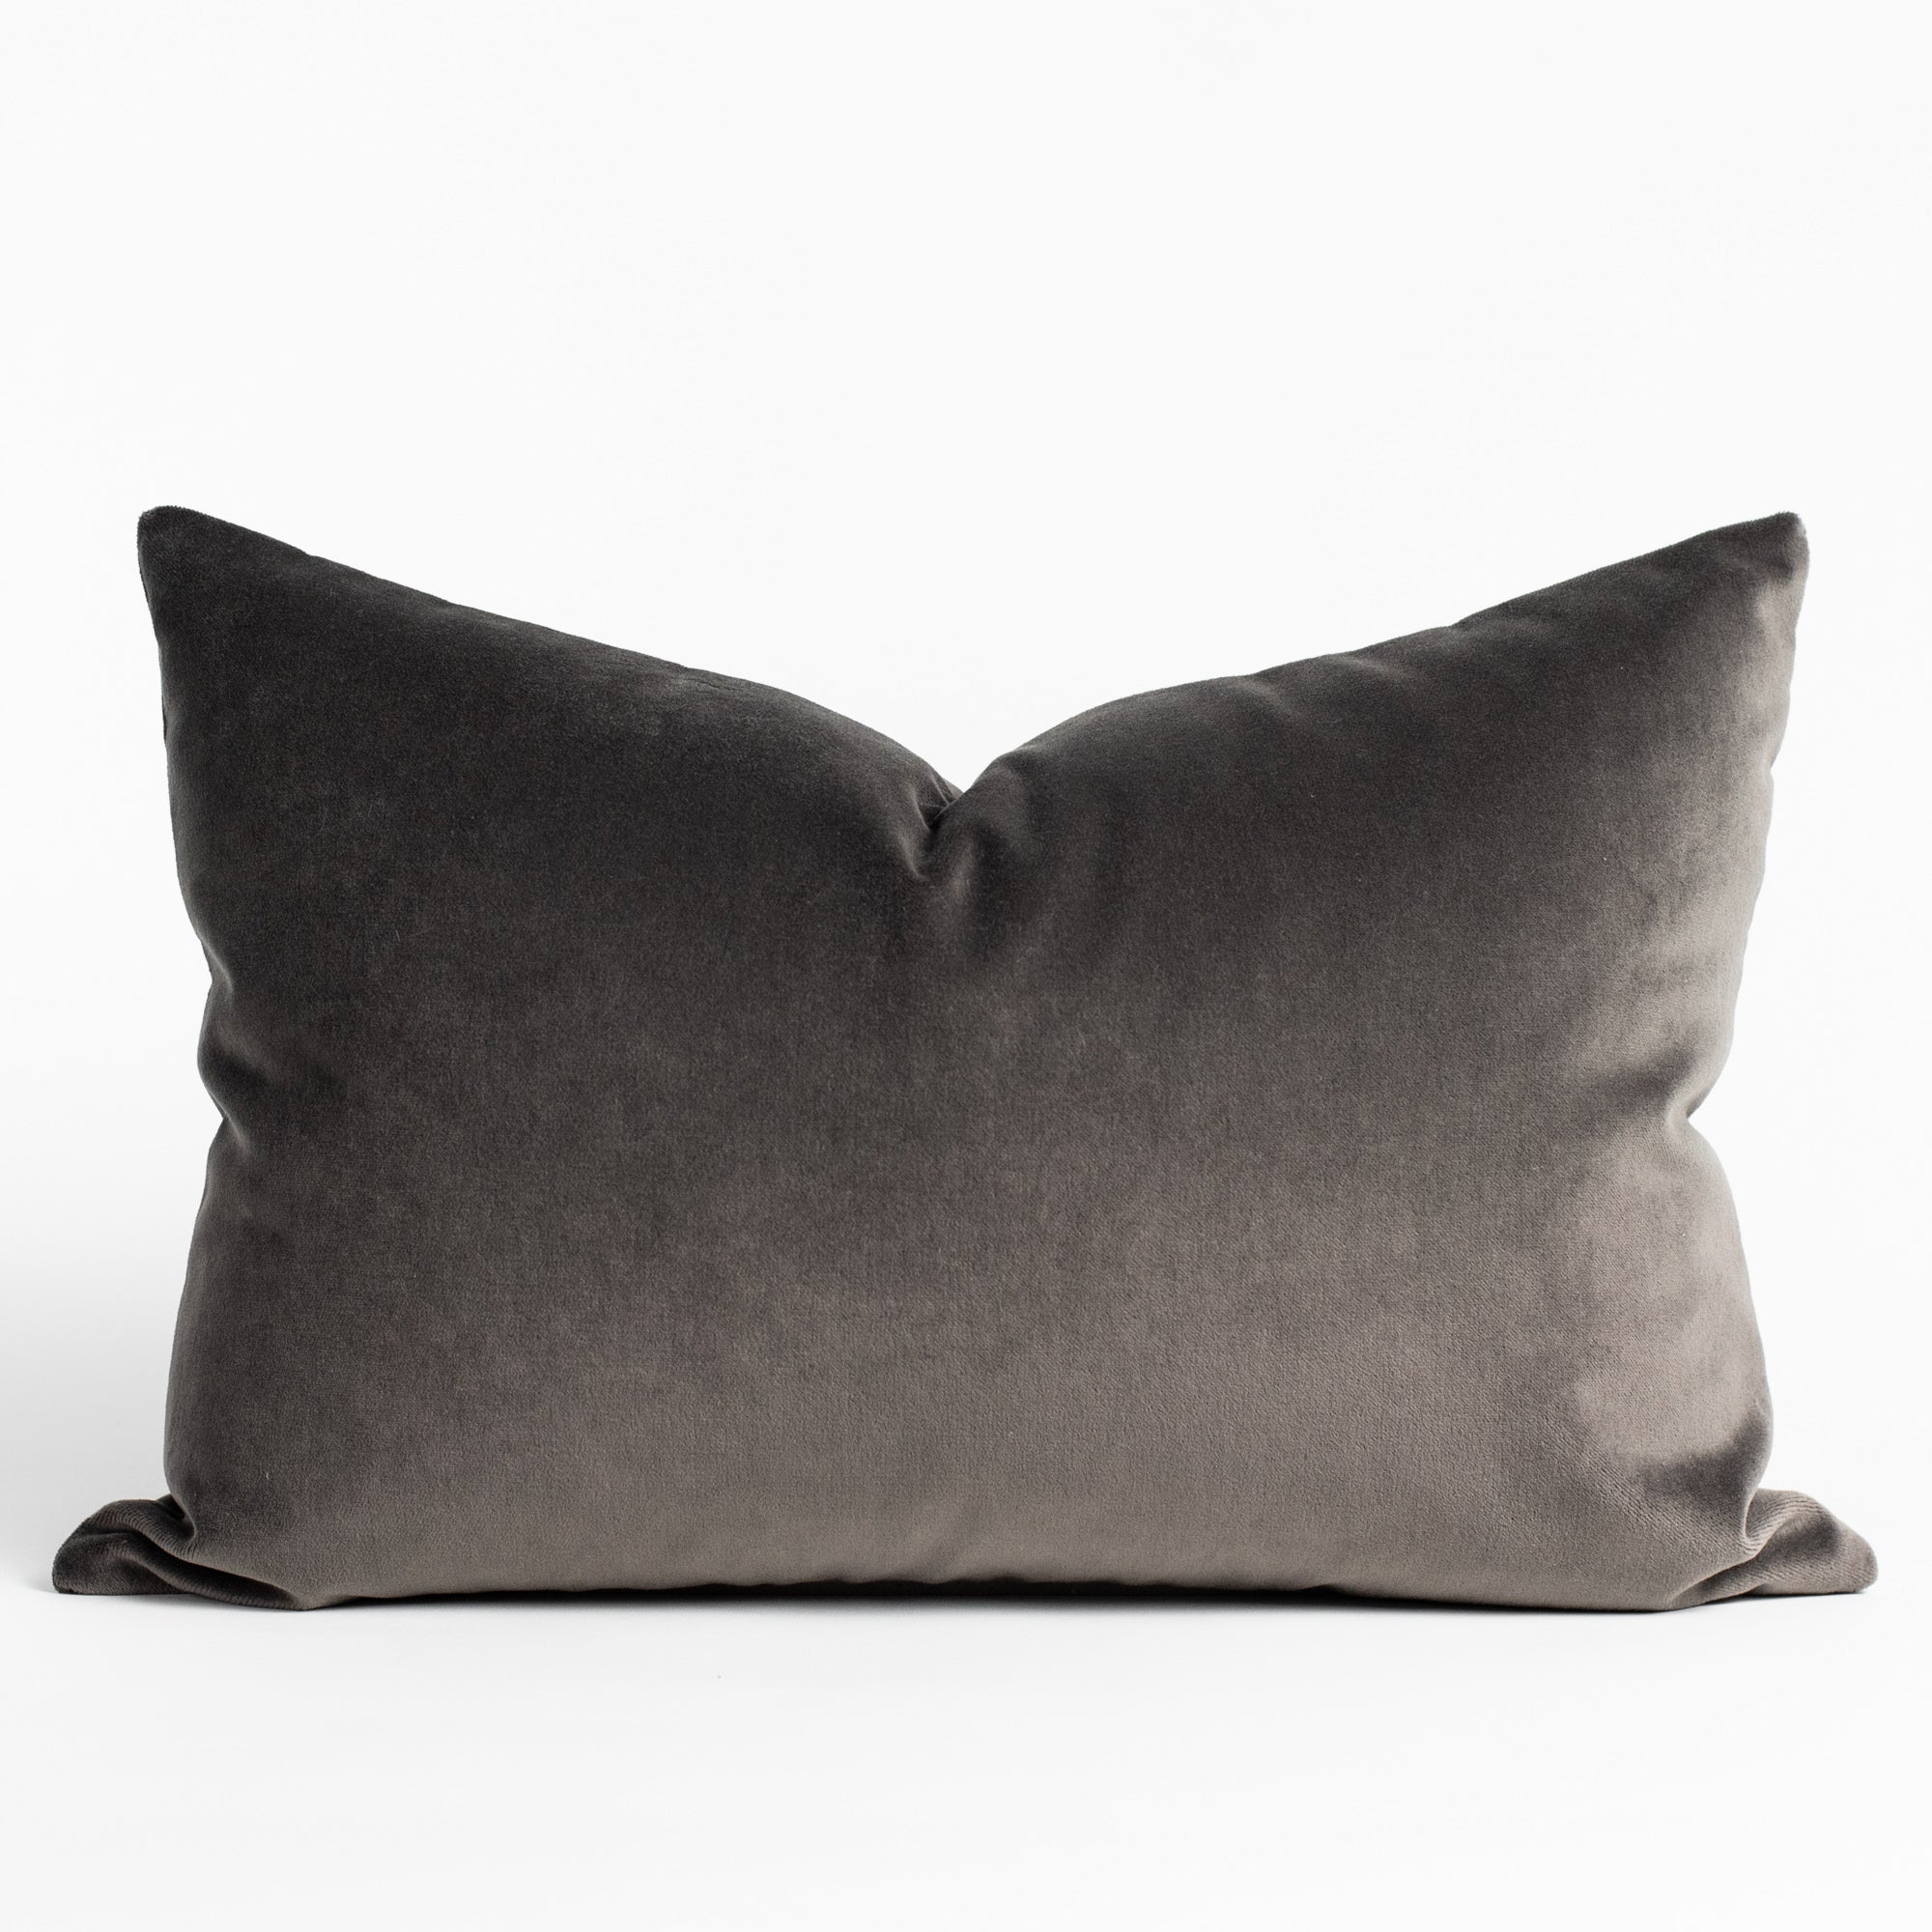 Mason Velvet Shale Lumbar, a deep grey velvet lumbar pillow from Tonic Living